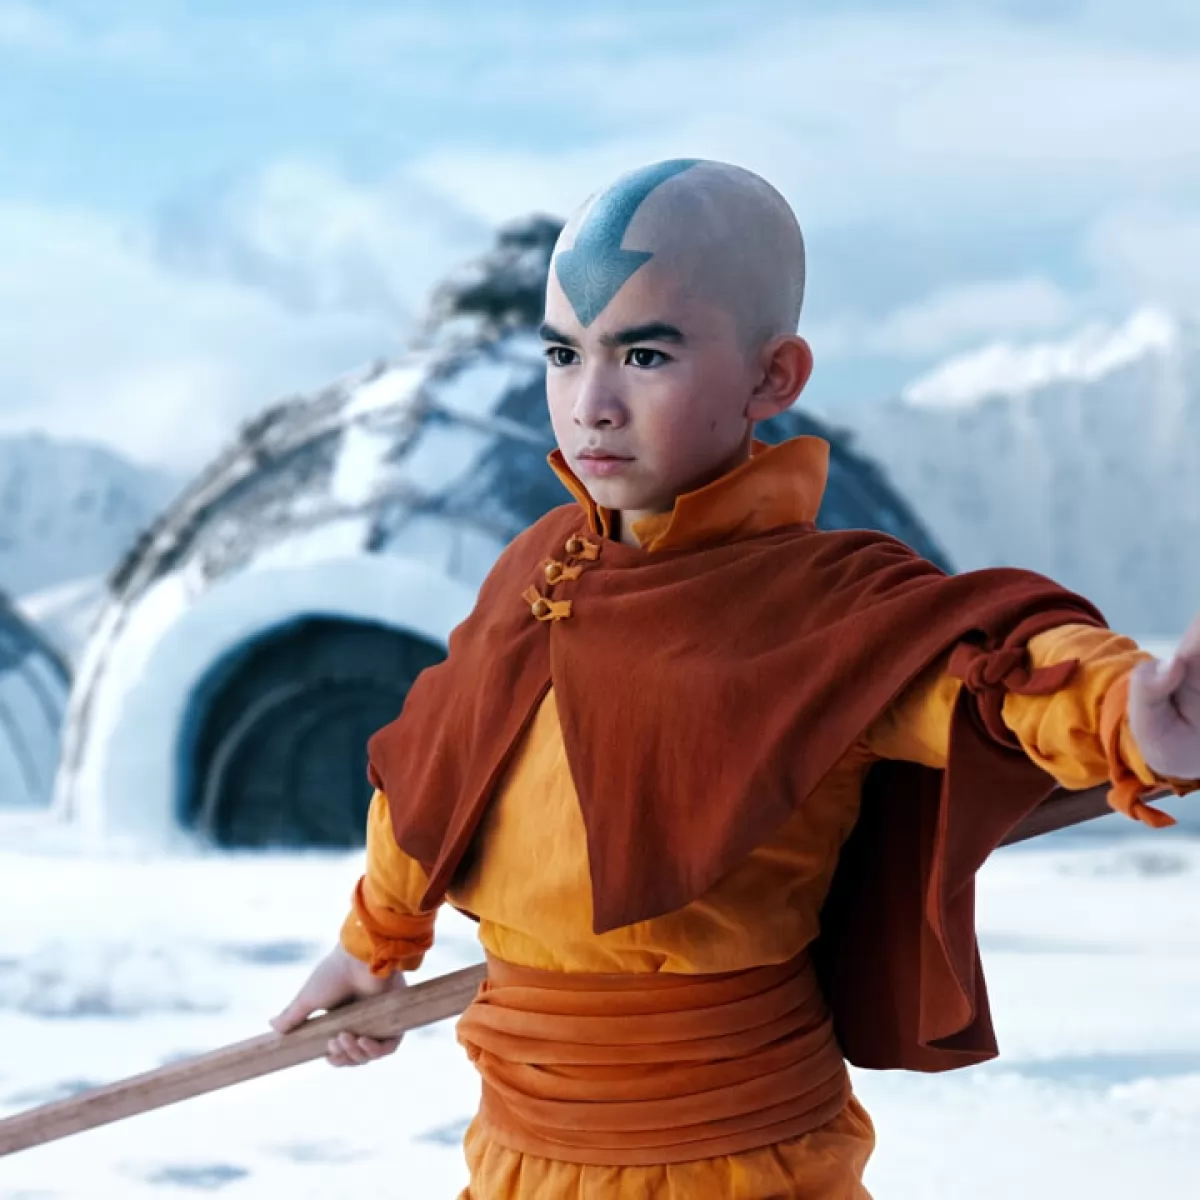 Avatar -La leggenda di Aang serie tv live action fantasy formazione netflix trama cast recensione trailer